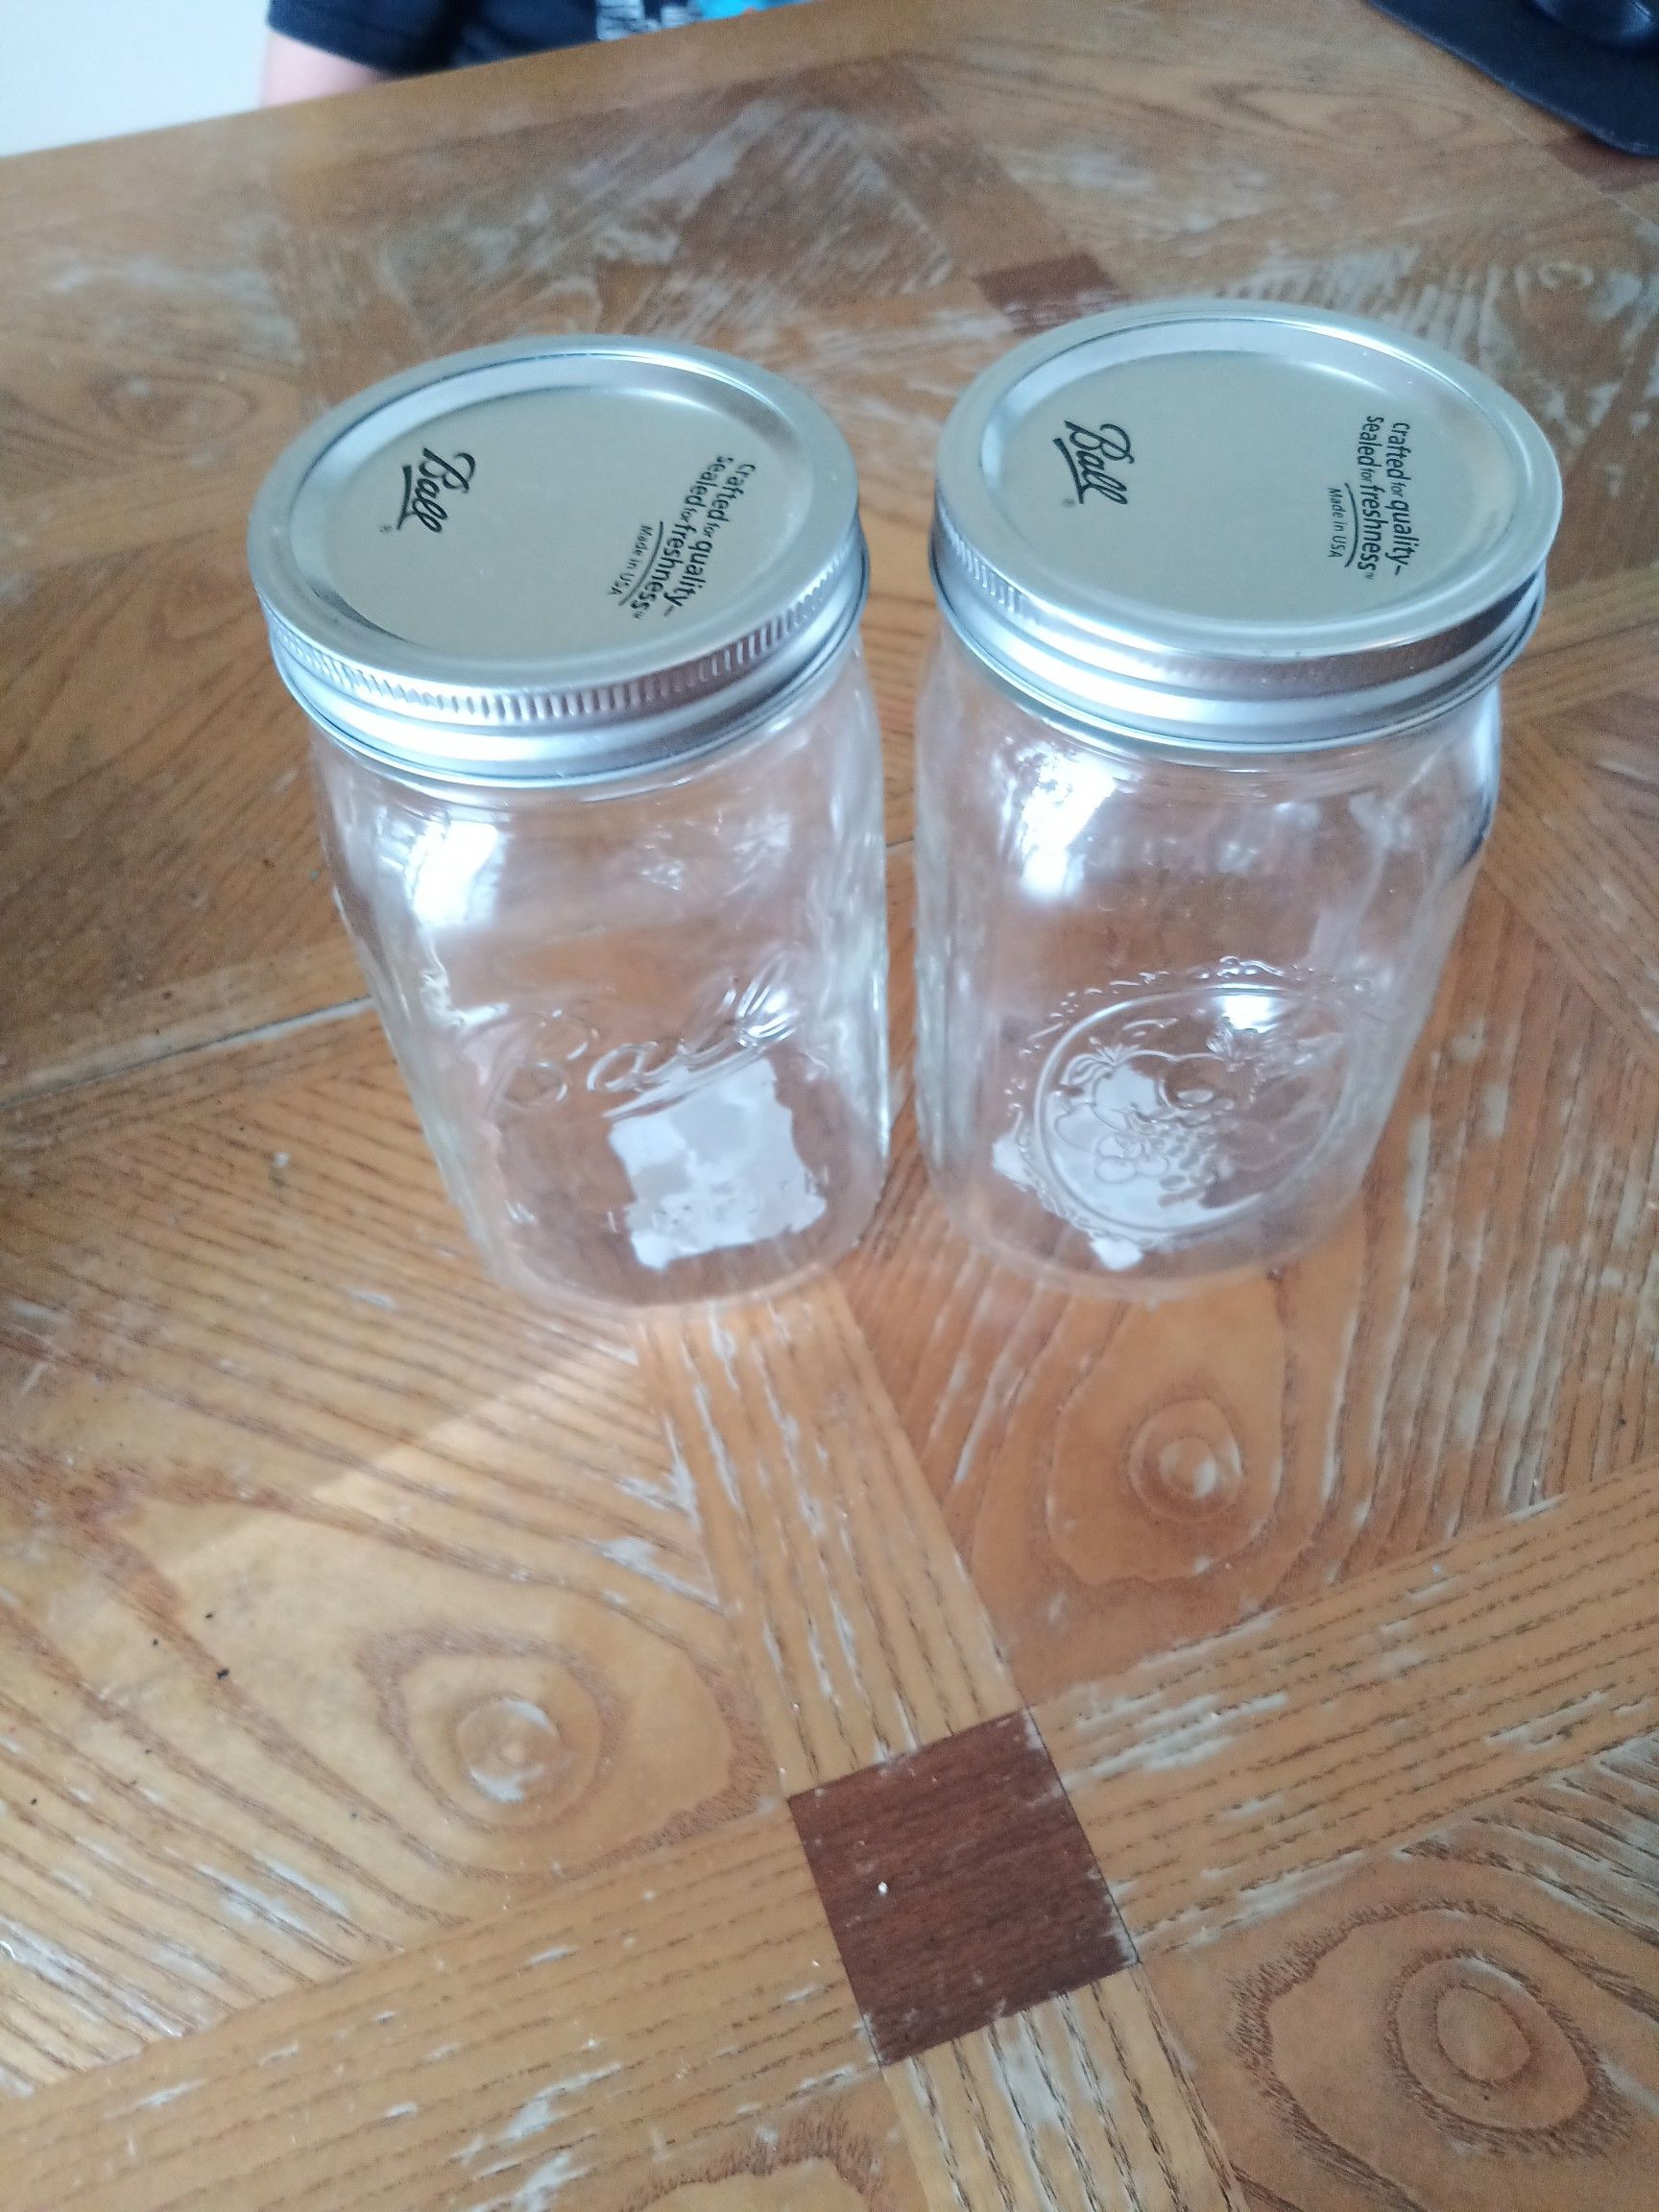 2 unused 32 oz Ball canning jars